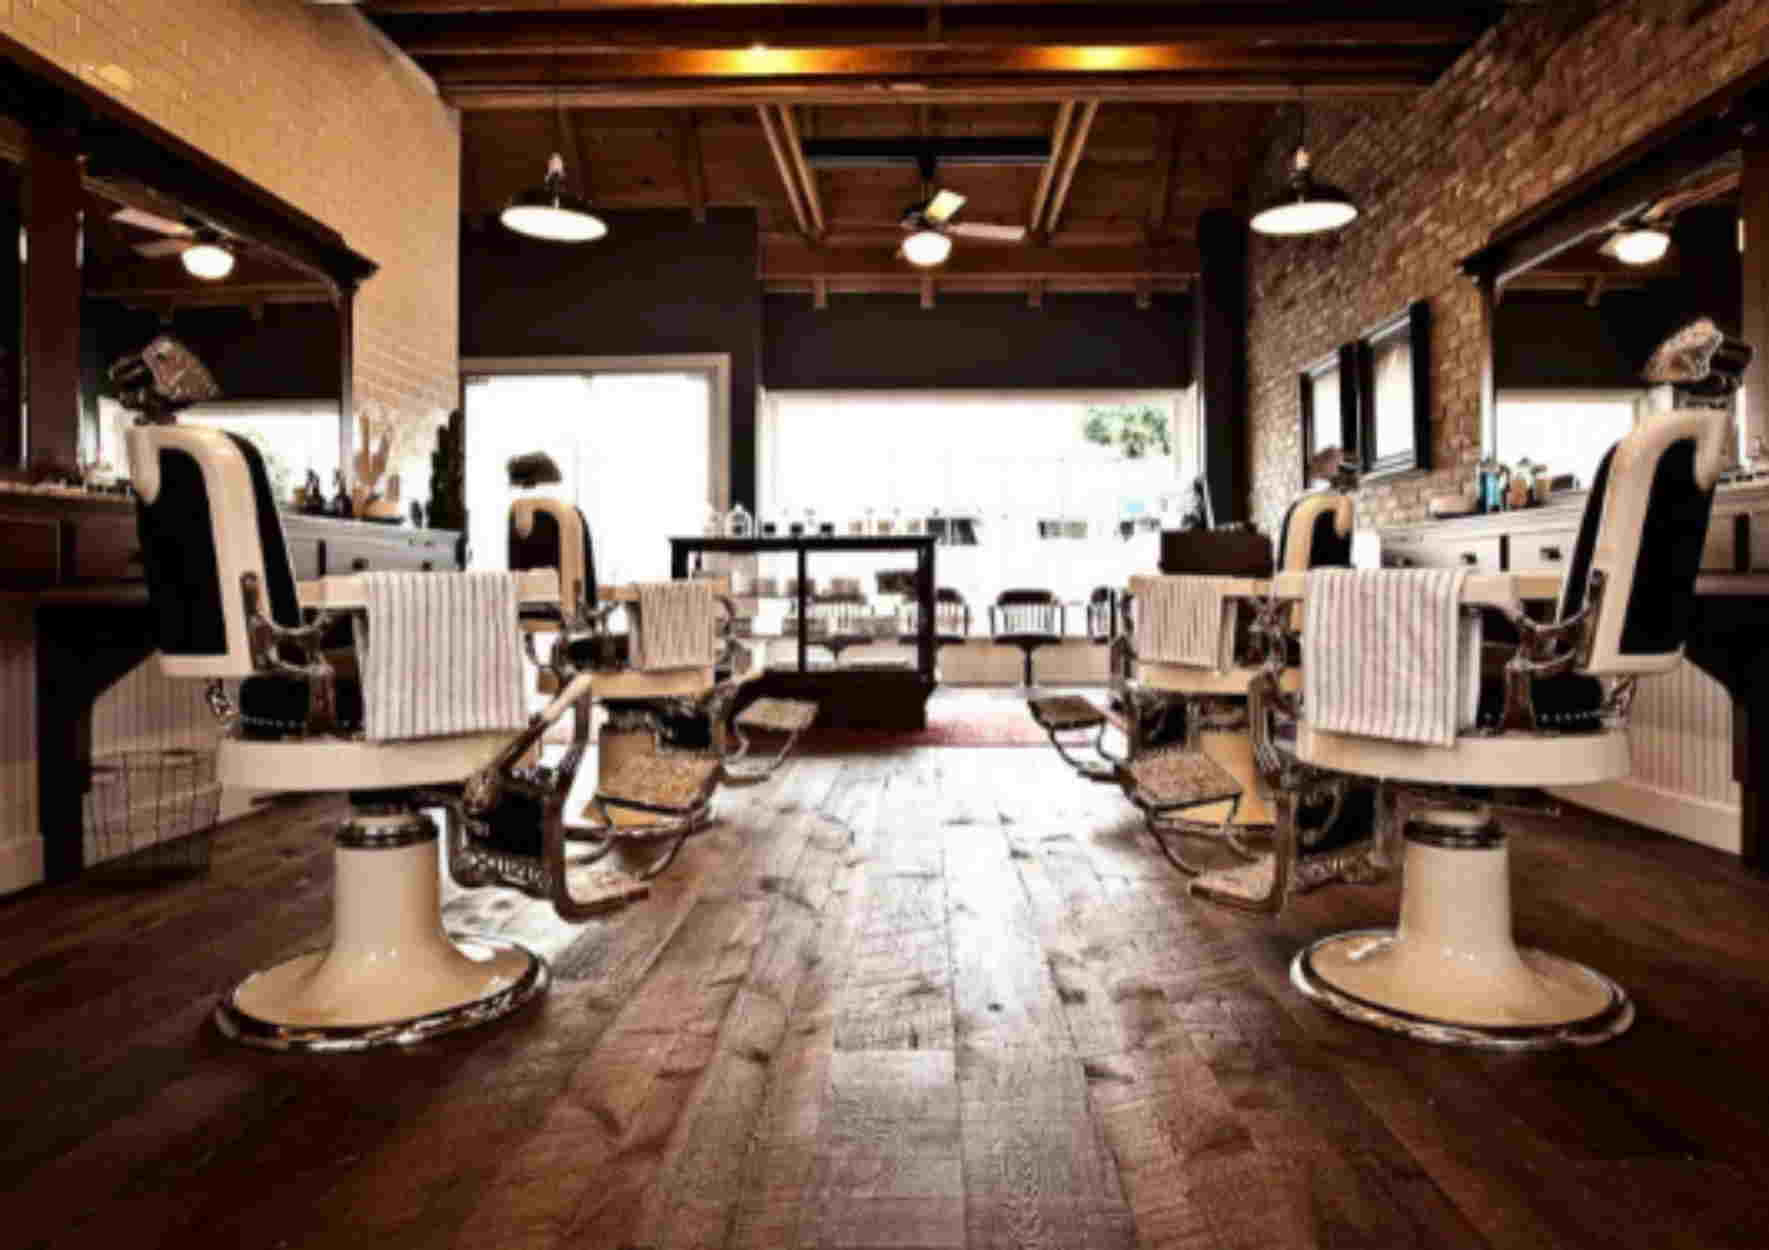 Σας ταξιδεύουμε στα 10 κορυφαία barber shops στον κόσμο